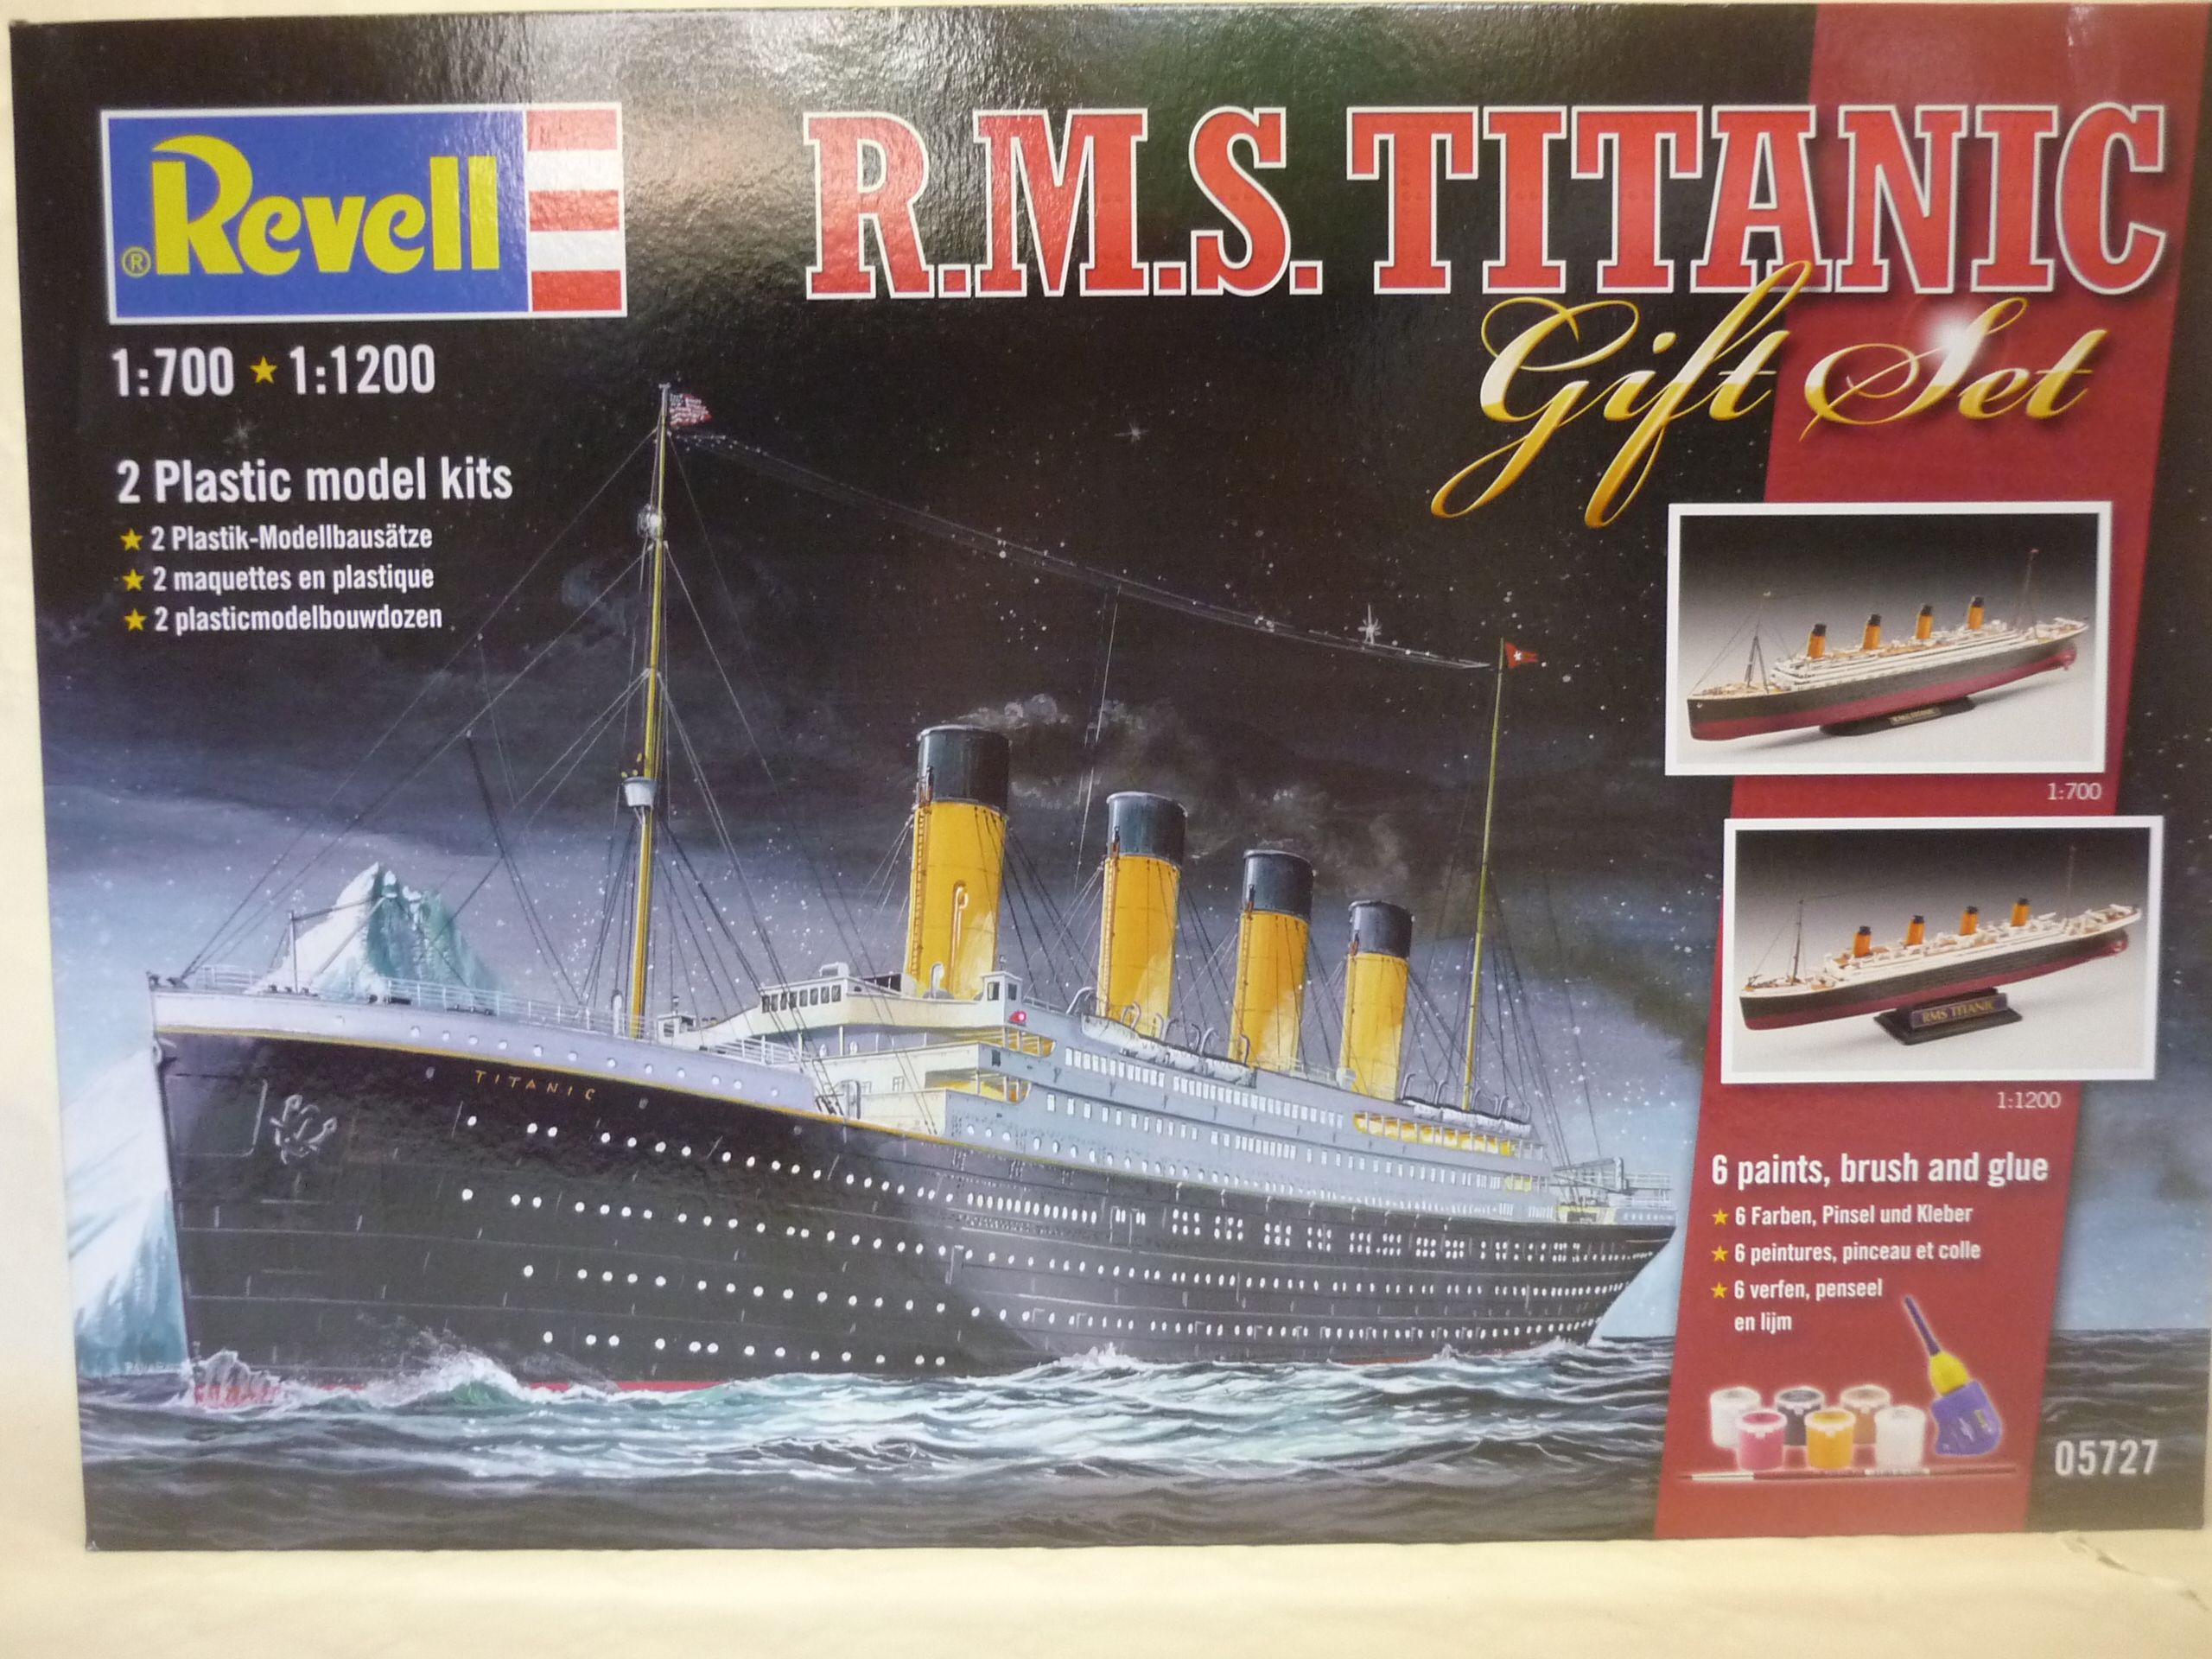 Maquette - Coffret 100 ans Titanic - 1/140 - Kits maquettes tout inclus -  Maquettes